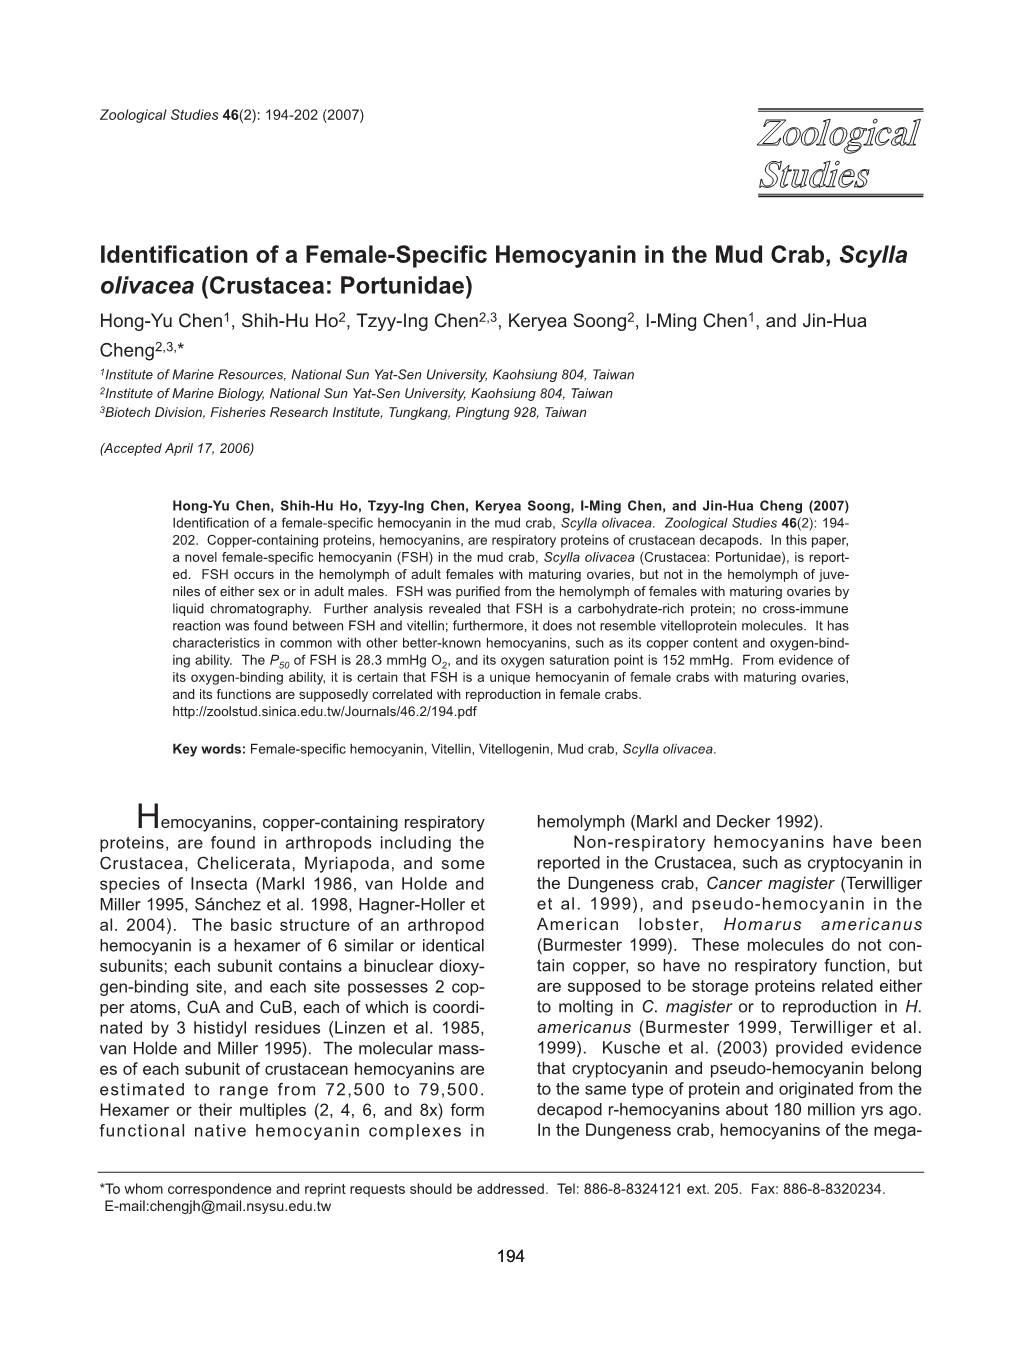 Identification of a Female-Specific Hemocyanin In